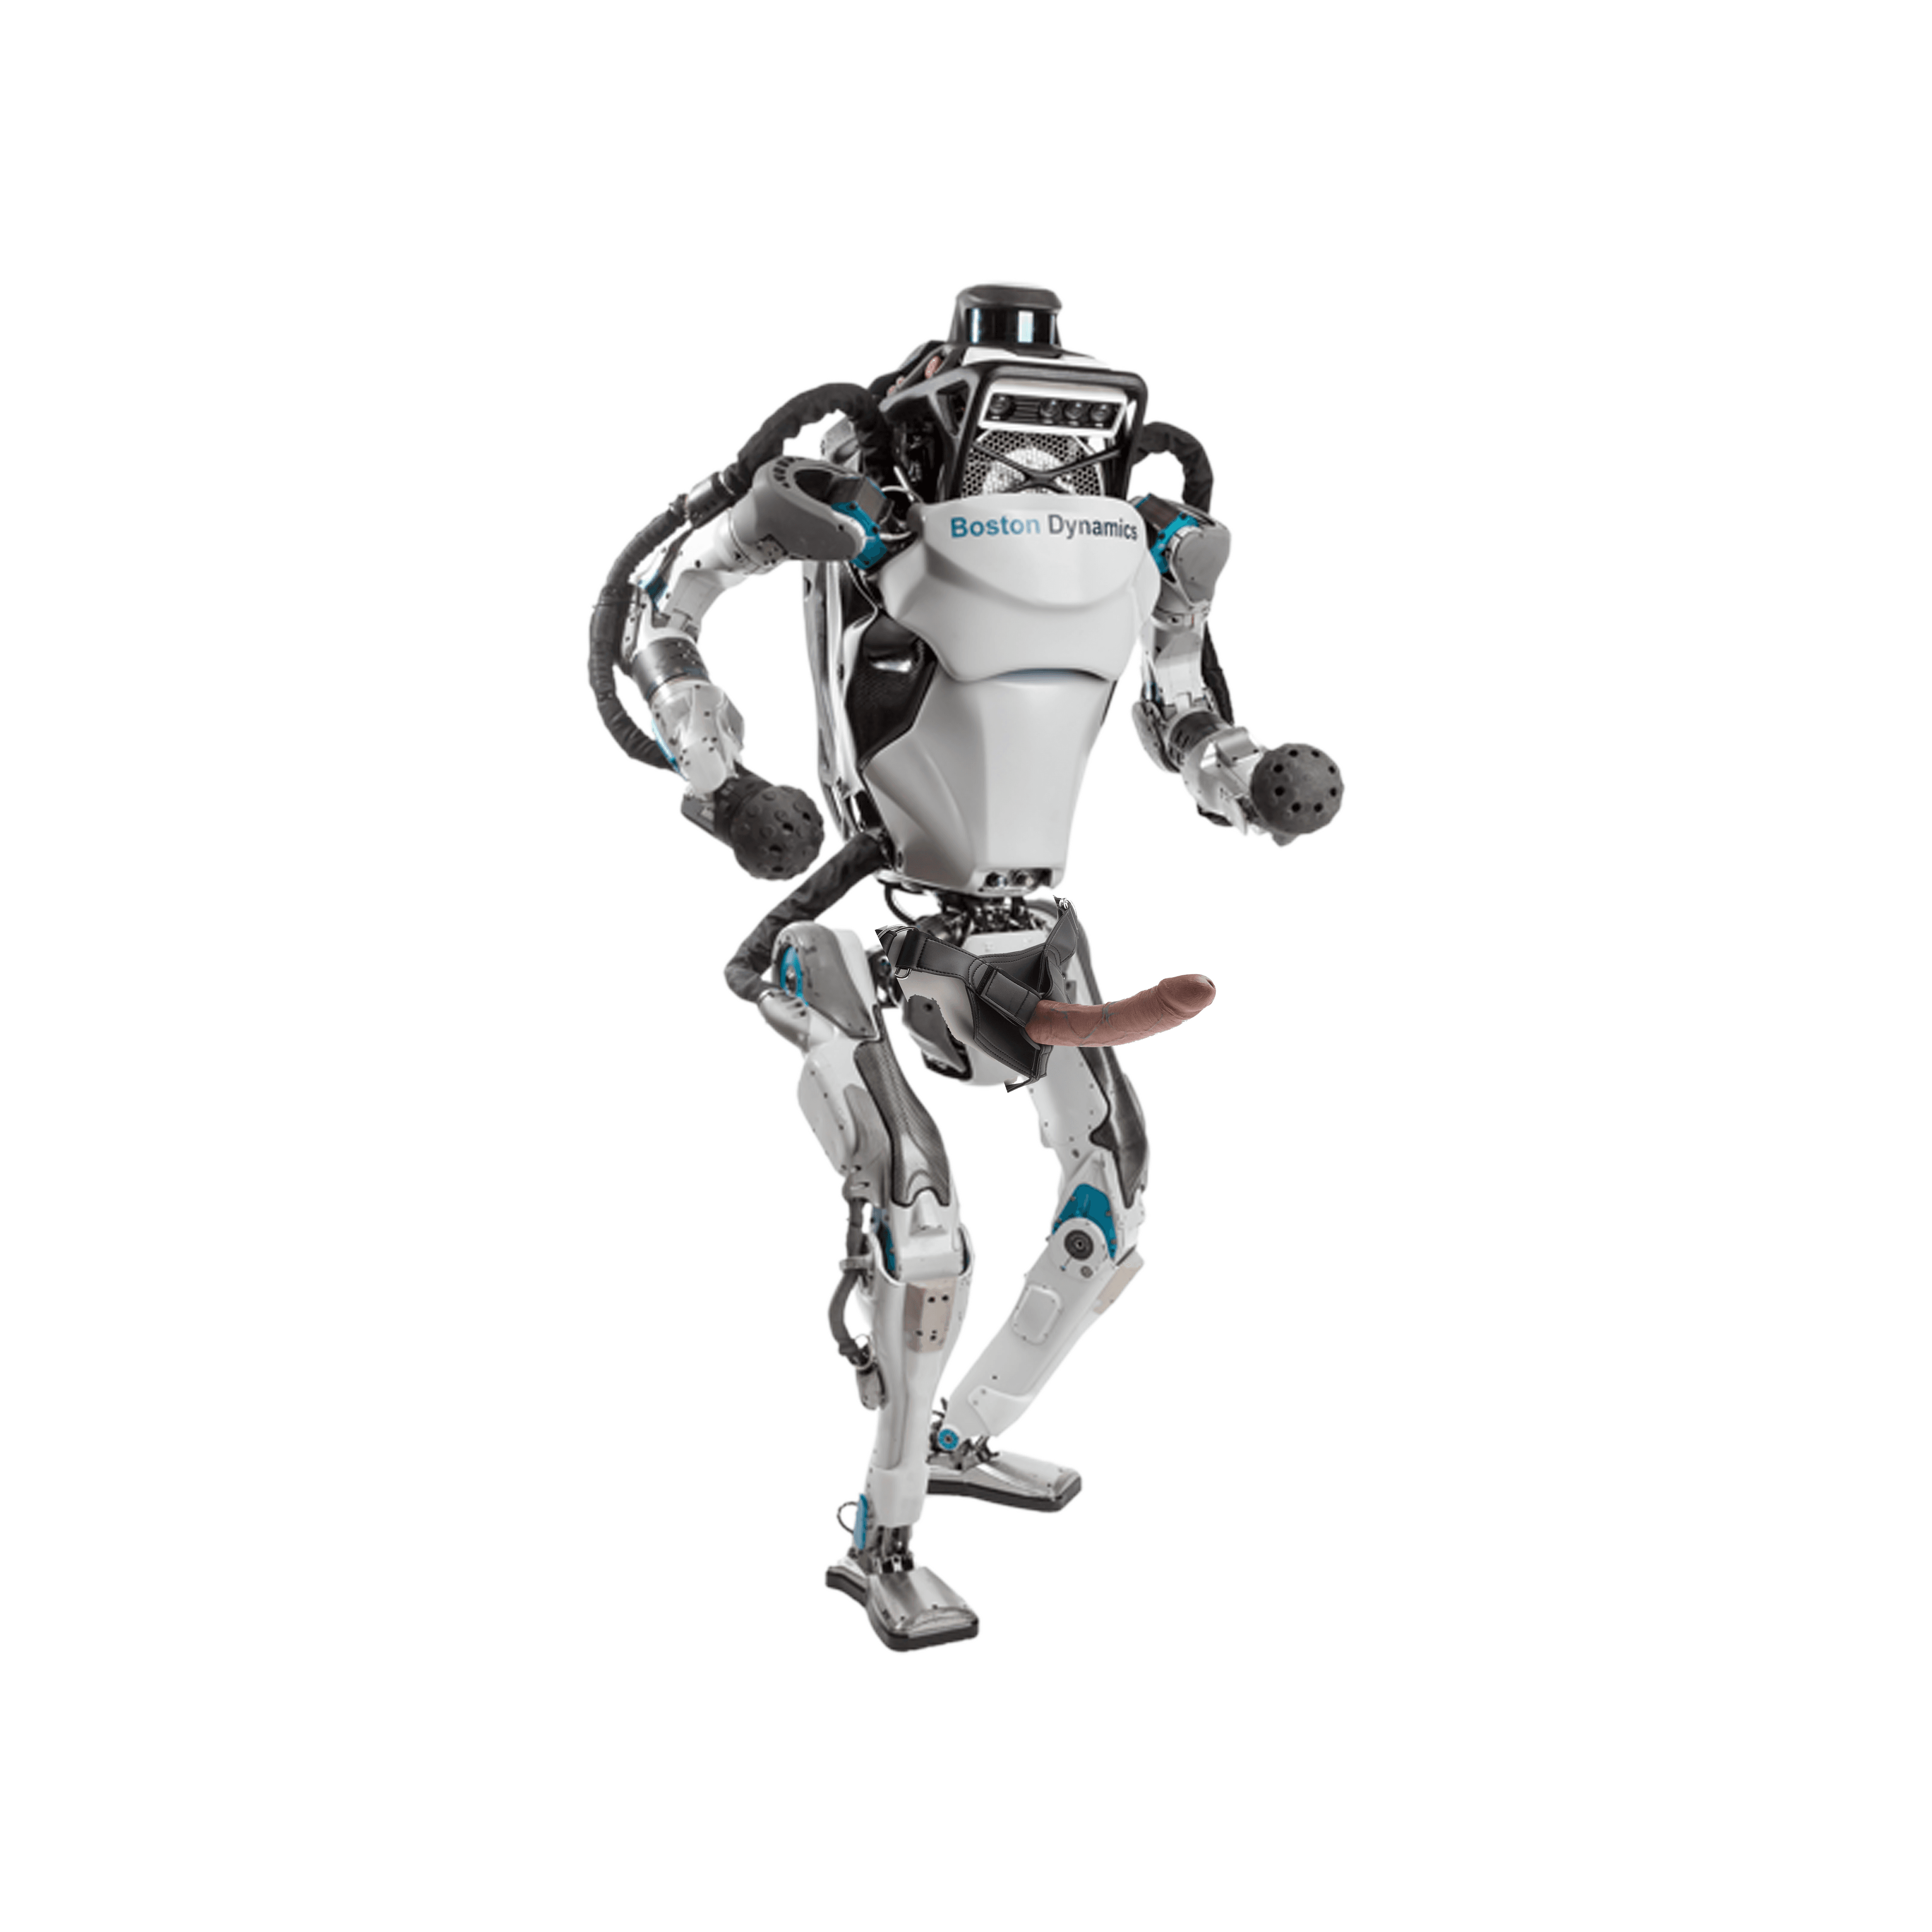 Boston Dynamics Robot with Strap-On Dildo, 2022